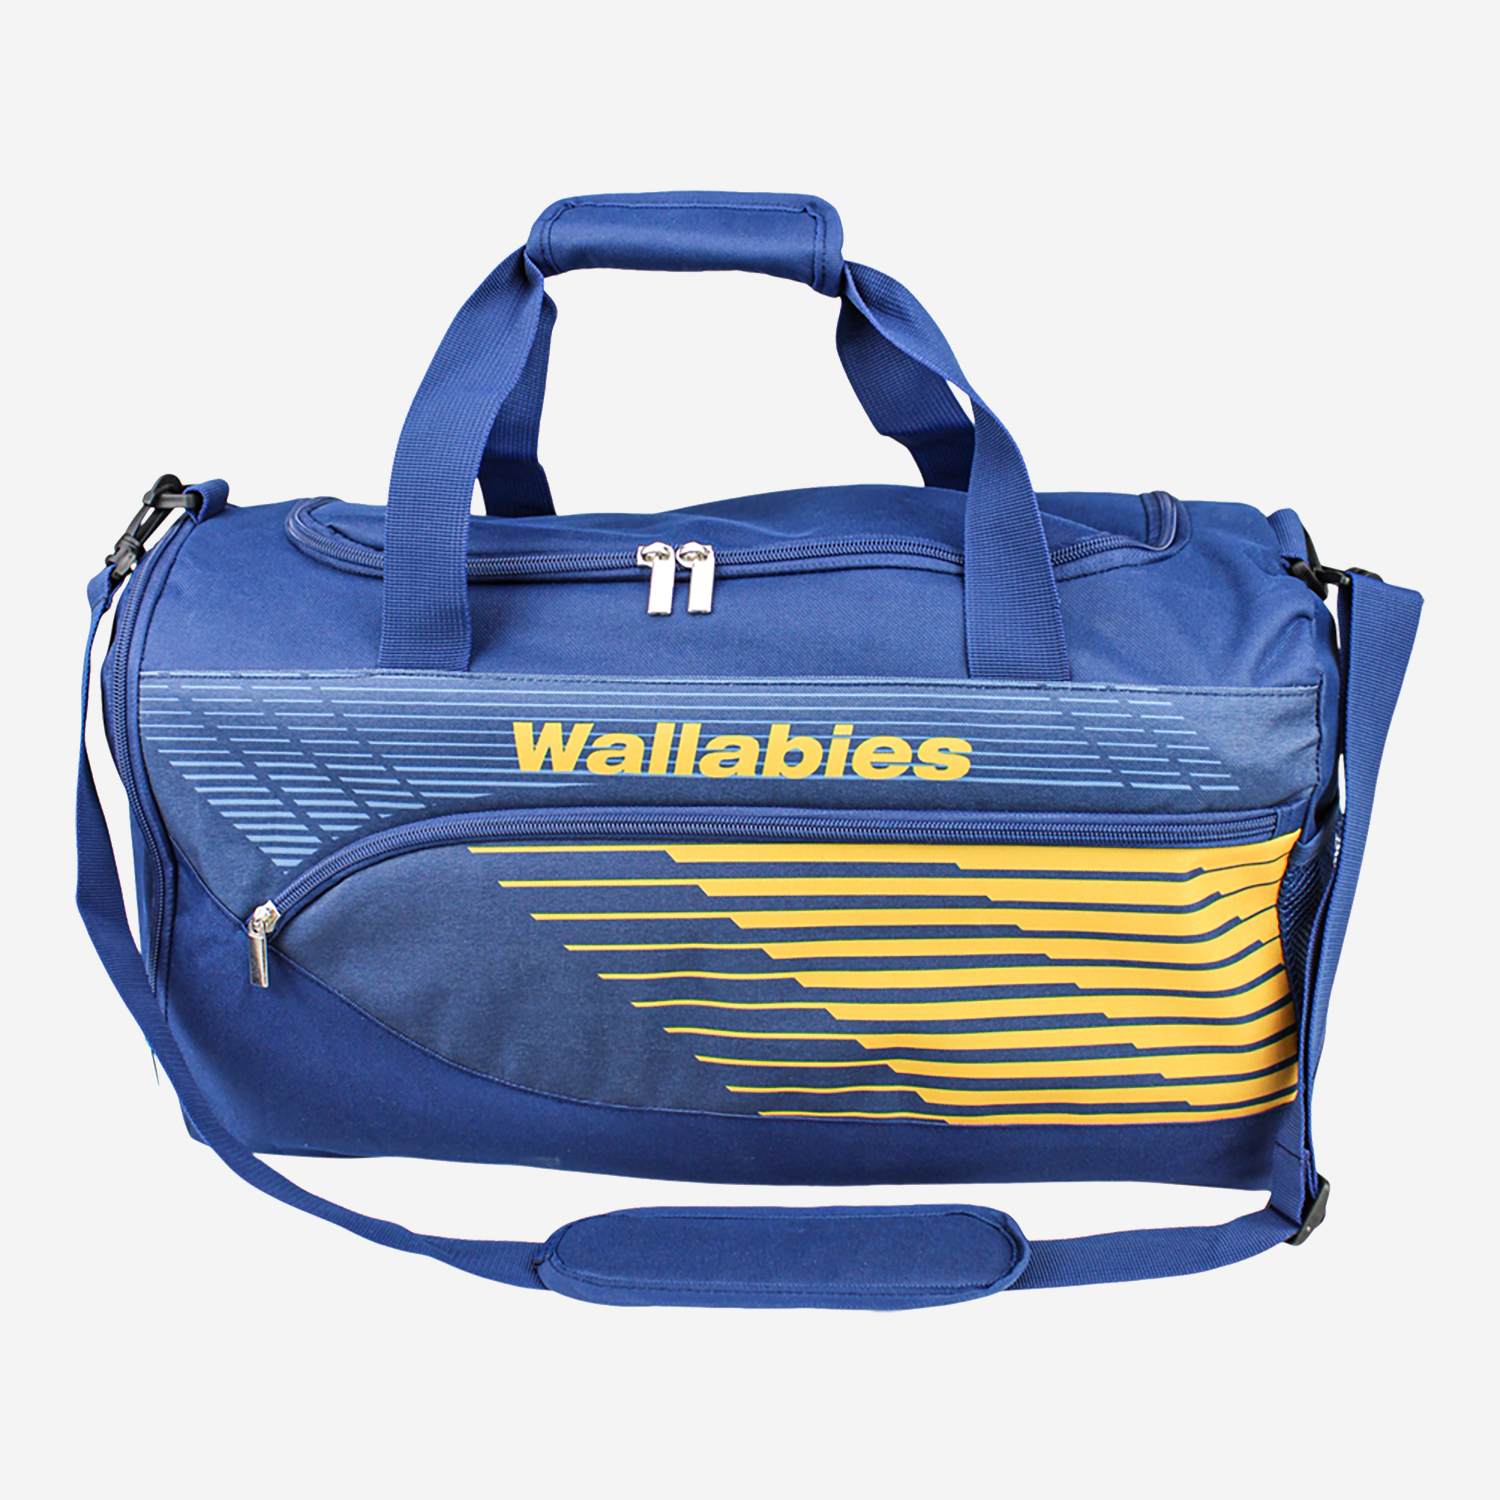 Wallabies Bolt Sports Bag